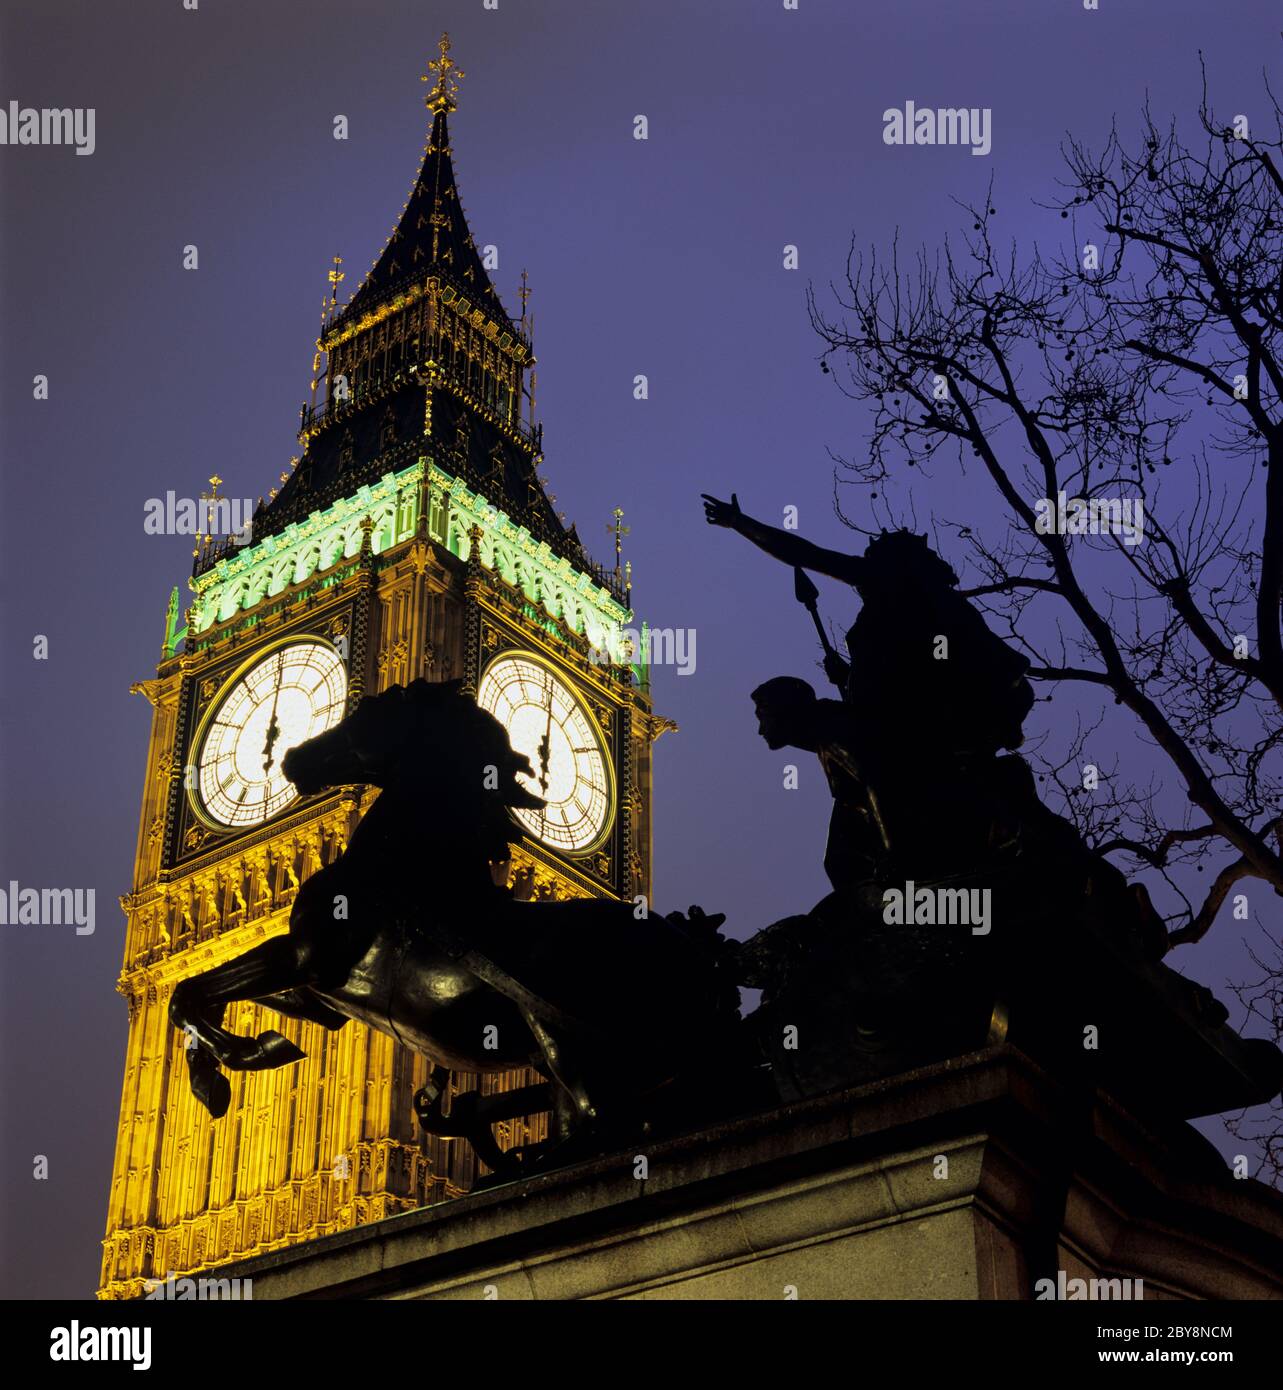 Nachtaufnahme des Big Ben mit Statue von Boudicca, London, England, Großbritannien Stockfoto